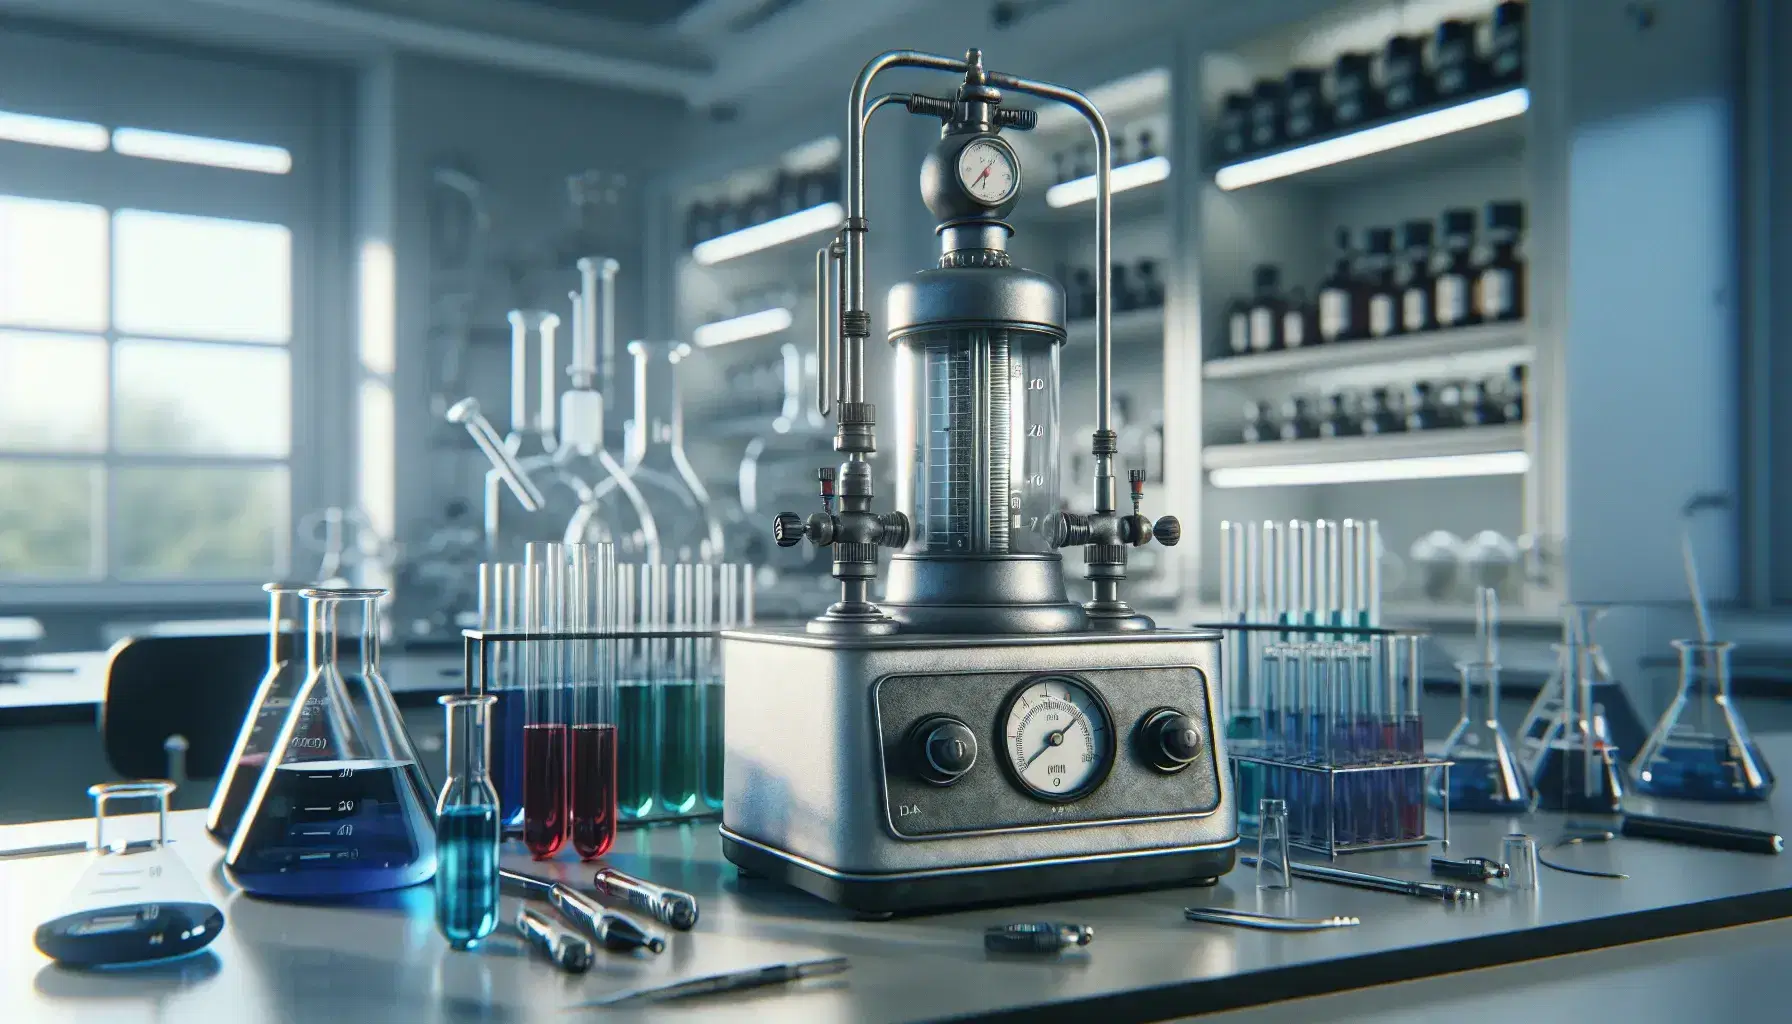 Laboratorio científico con calorímetro metálico y termómetro, tubos de ensayo con líquidos de colores y mechero Bunsen encendido, en un entorno limpio y ordenado.